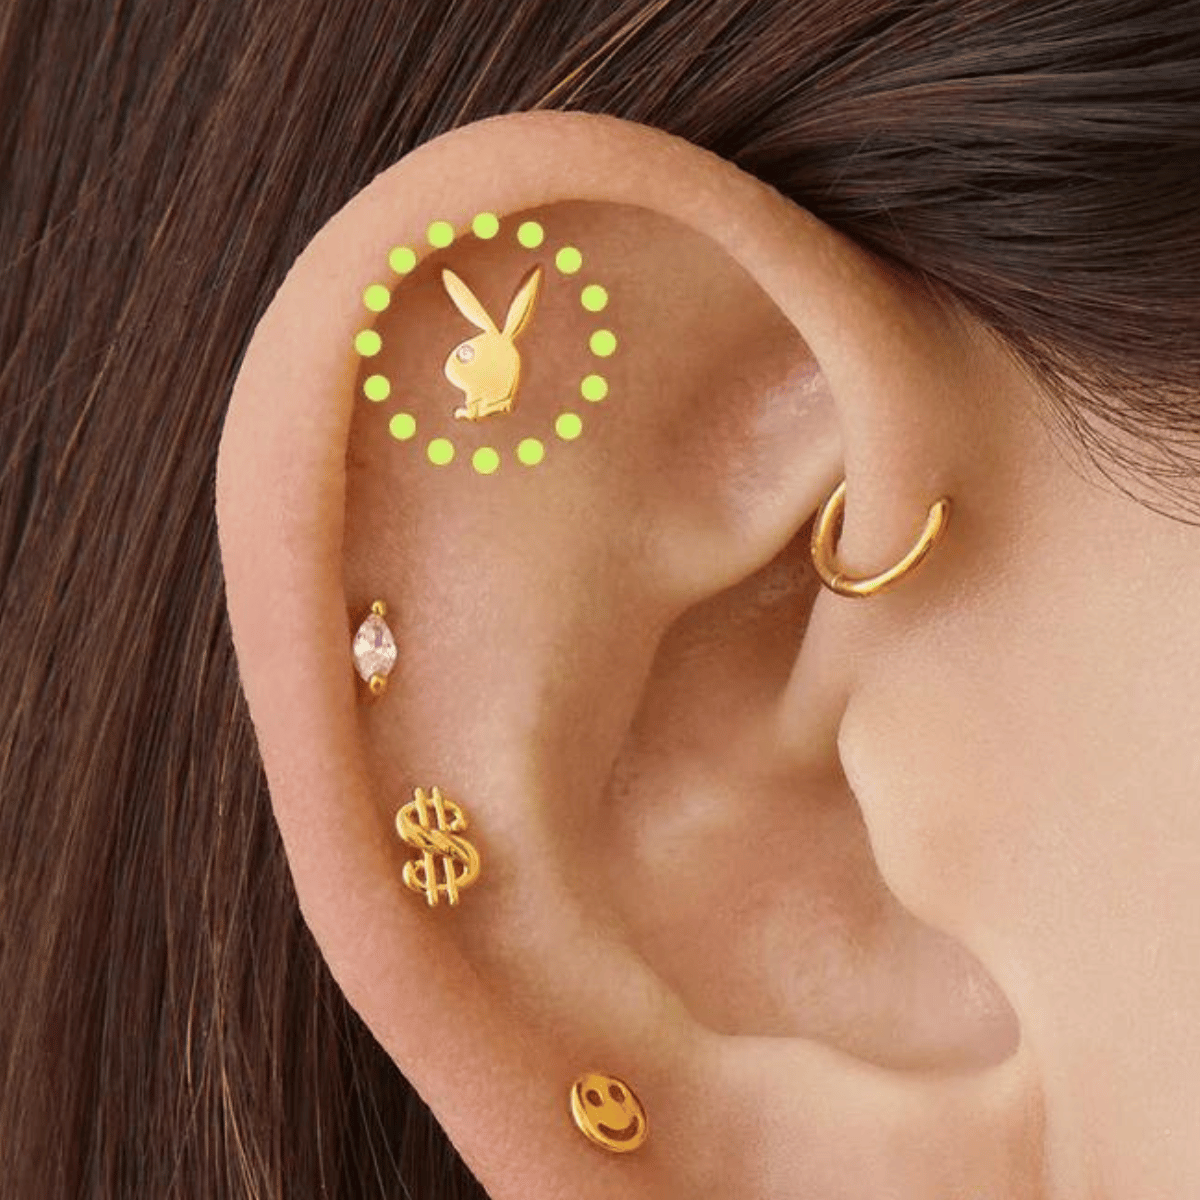 Buy MEENAZ Piercing Men Jewellery Diamond Studs Hoop Earings/Ear rings  Earrings For Men/Boys/Gents/Girls/Boyfriend Girlfriend Unisex - BALI-M9196  at Amazon.in